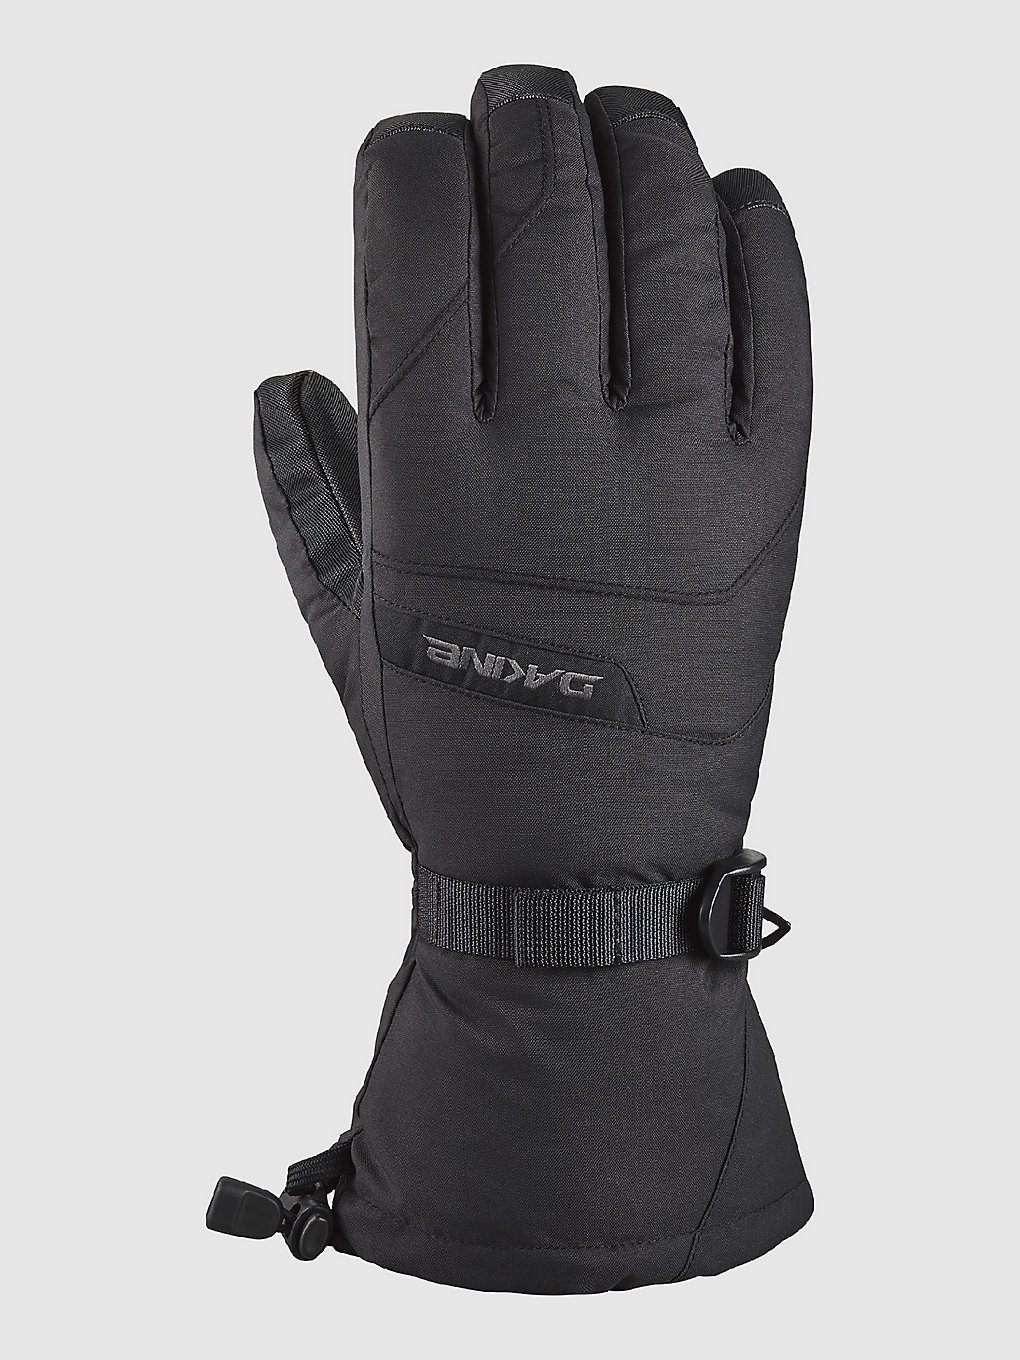 Dakine Blazer Handschuhe black kaufen